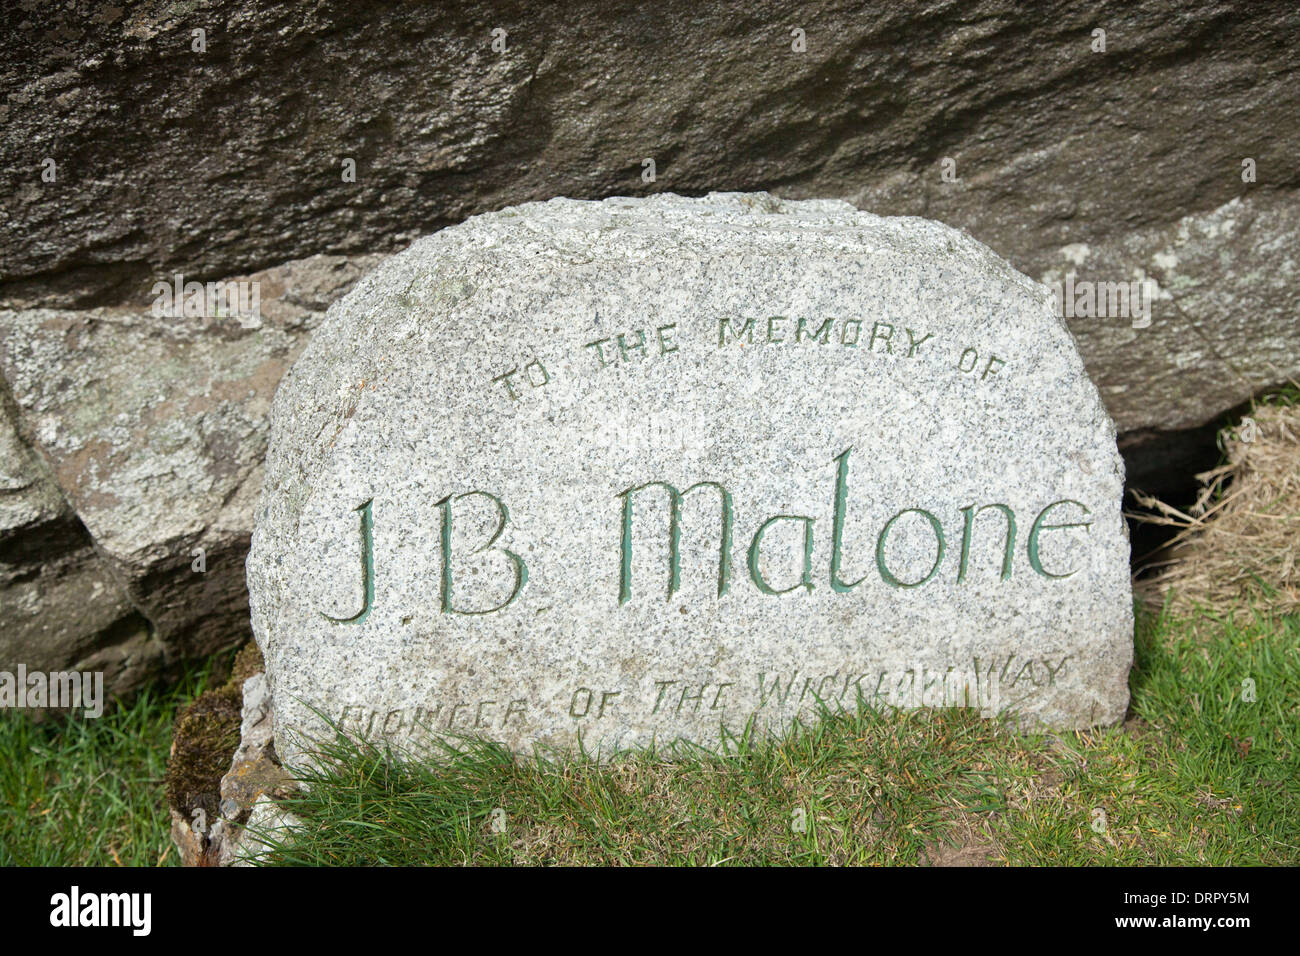 Denkmal für JB Malone, Gründer der Wicklow Way Wanderweg. Djouce Berg, Wicklow Mountains, County Wicklow, Irland. Stockfoto